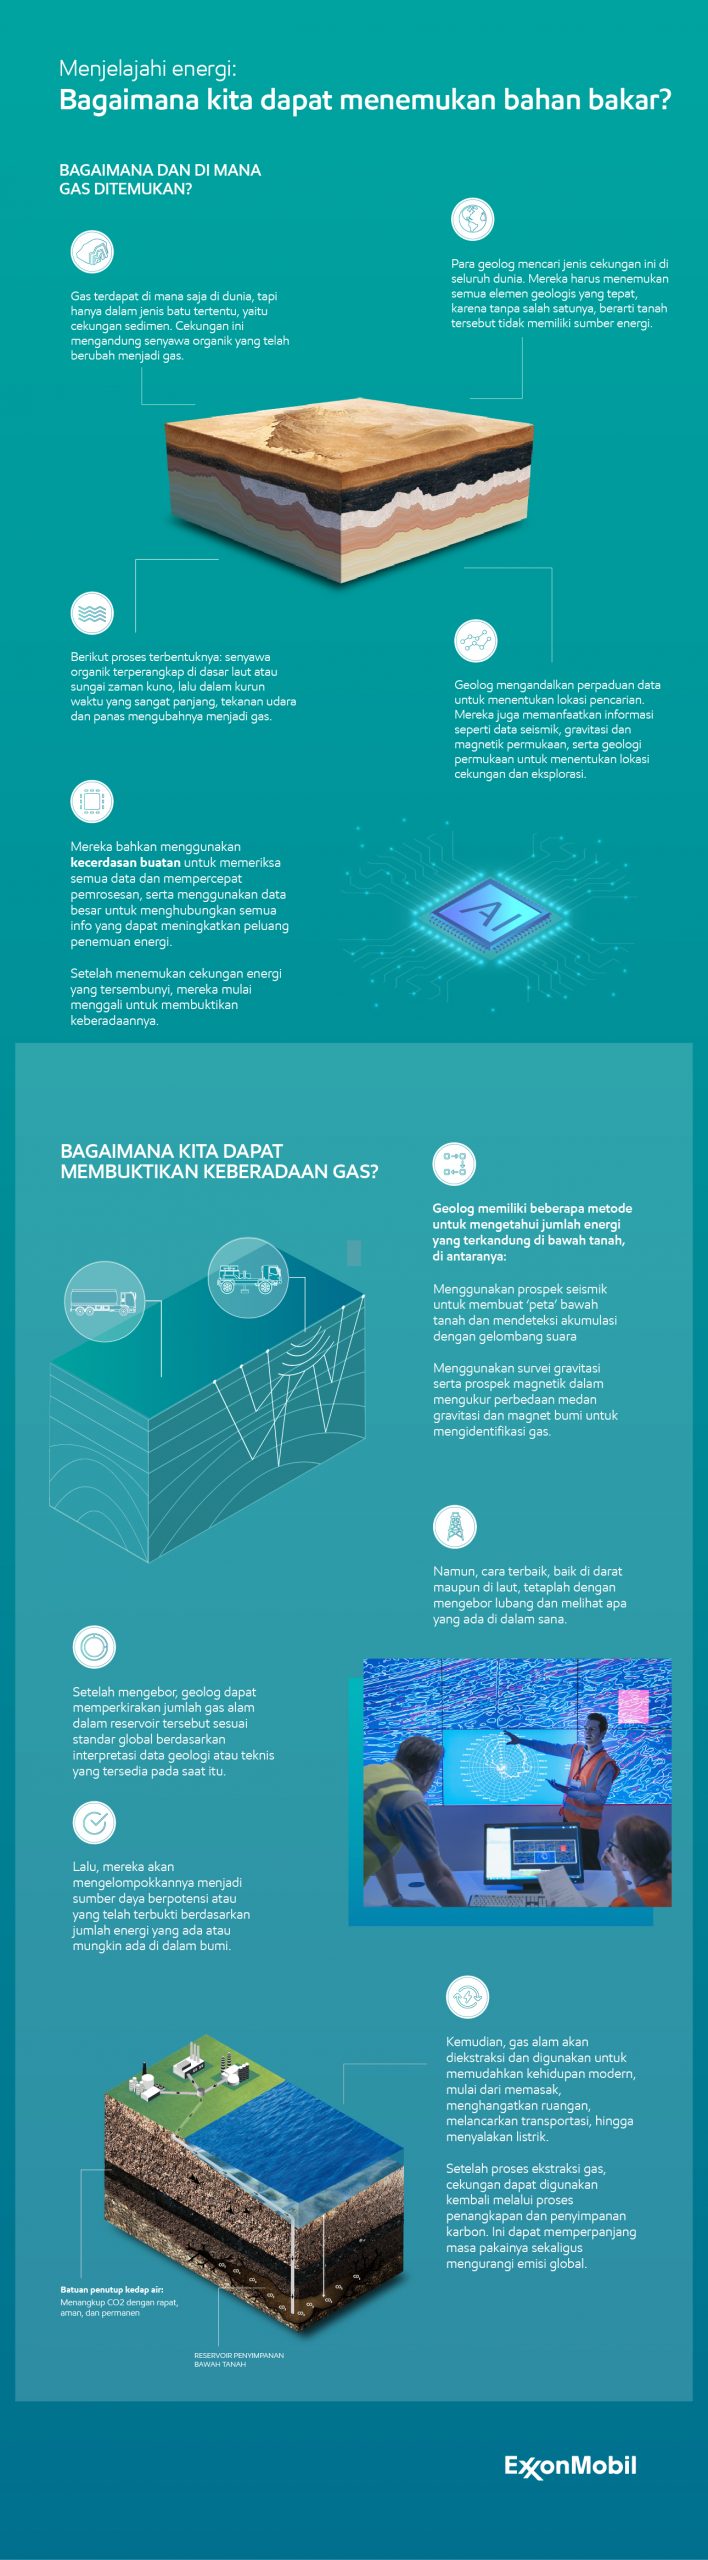 Infografis mengenai bagaimana dan di mana gas ditemukan dan bagaimana membuktikan keberadaan gas.